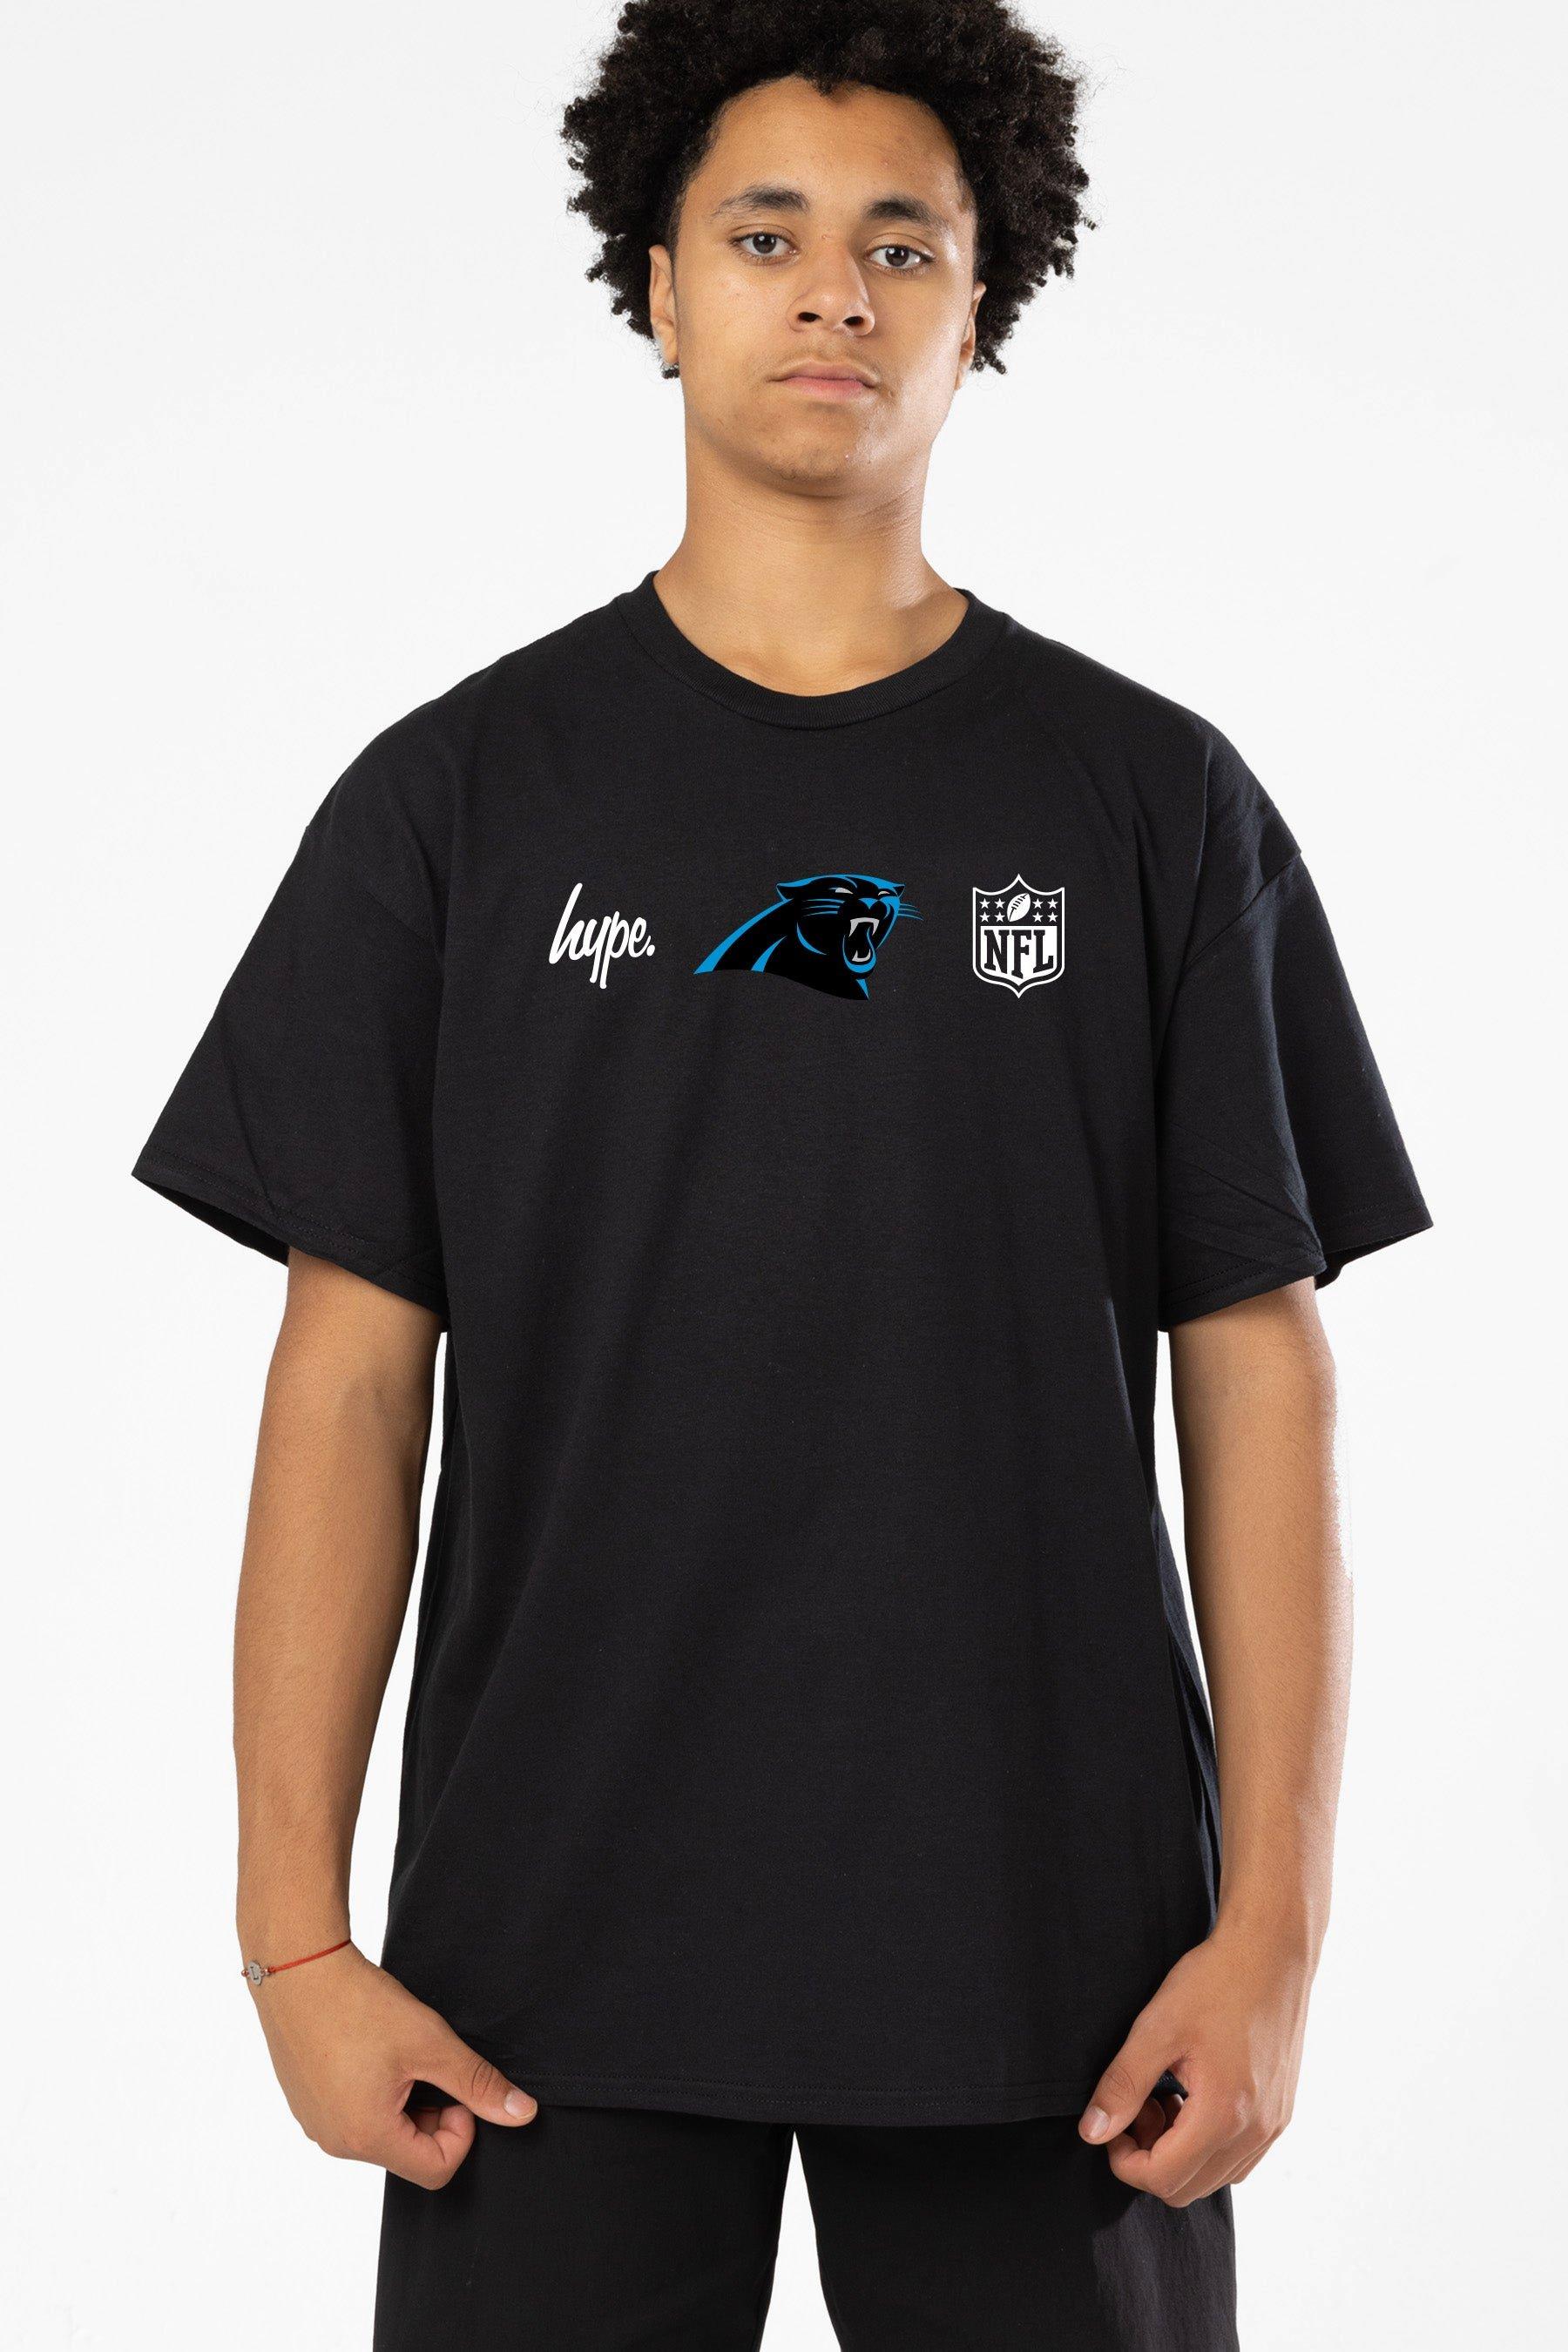 NFL X Carolina Panthers T-Shirt